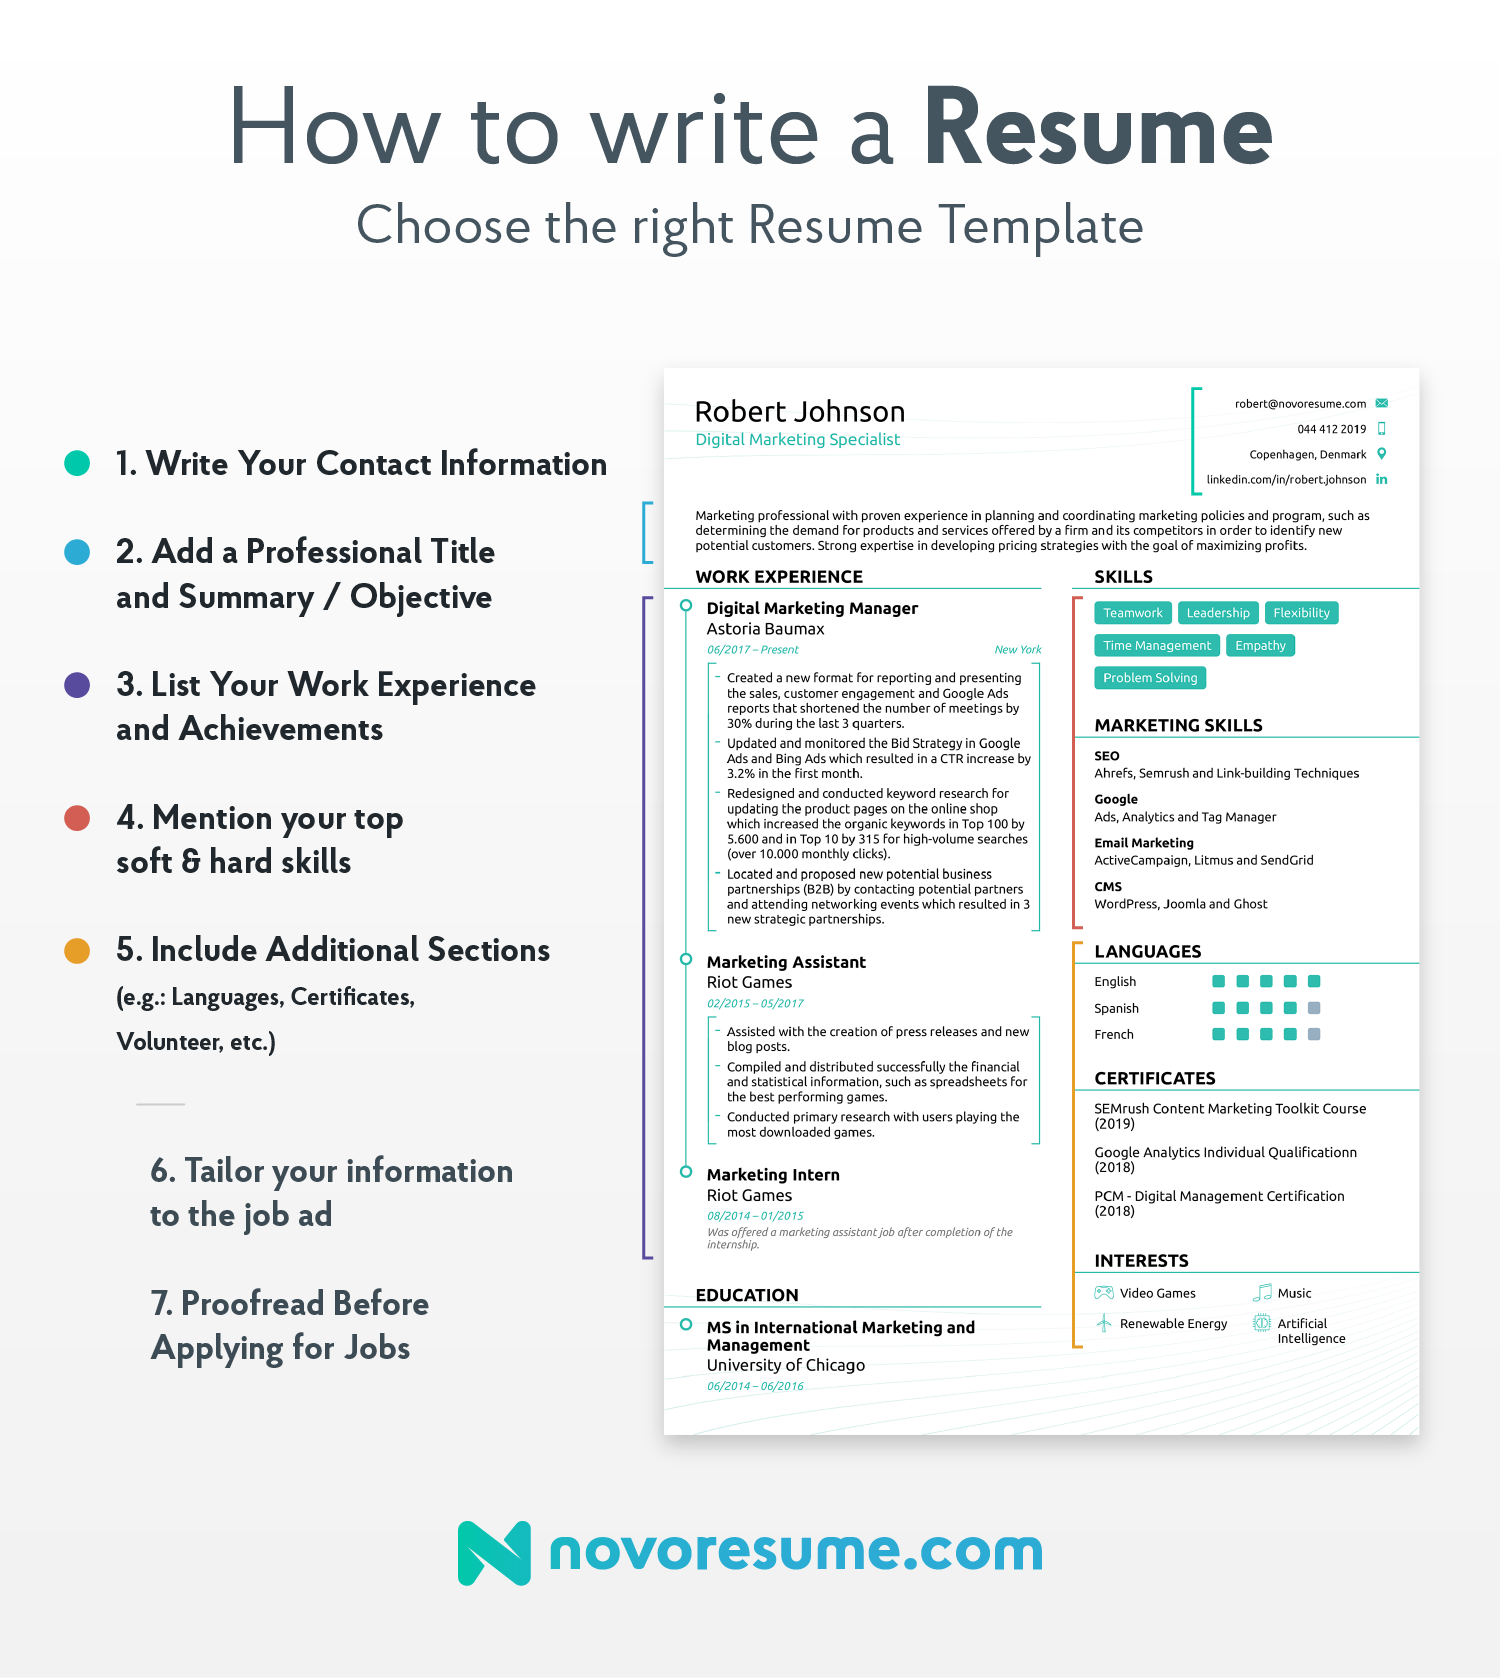 Why I Hate resume